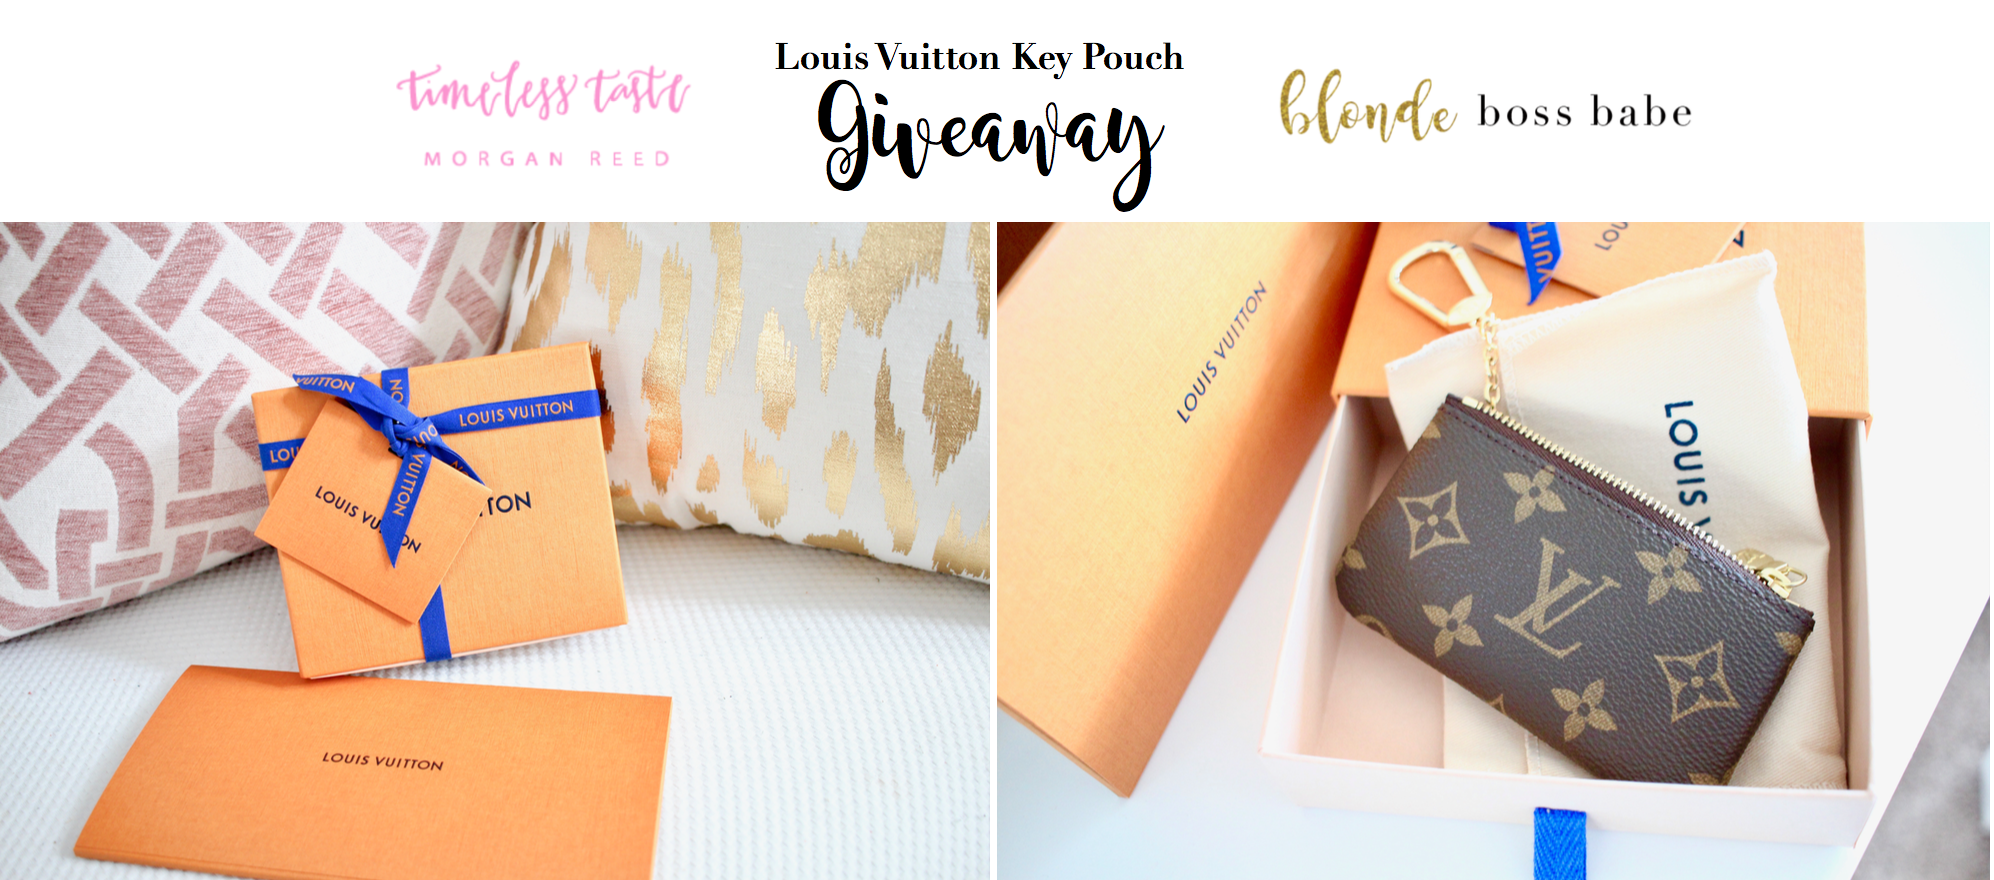 Louis Vuitton Key Pouch Giveaway! - Malia Lynn Blog